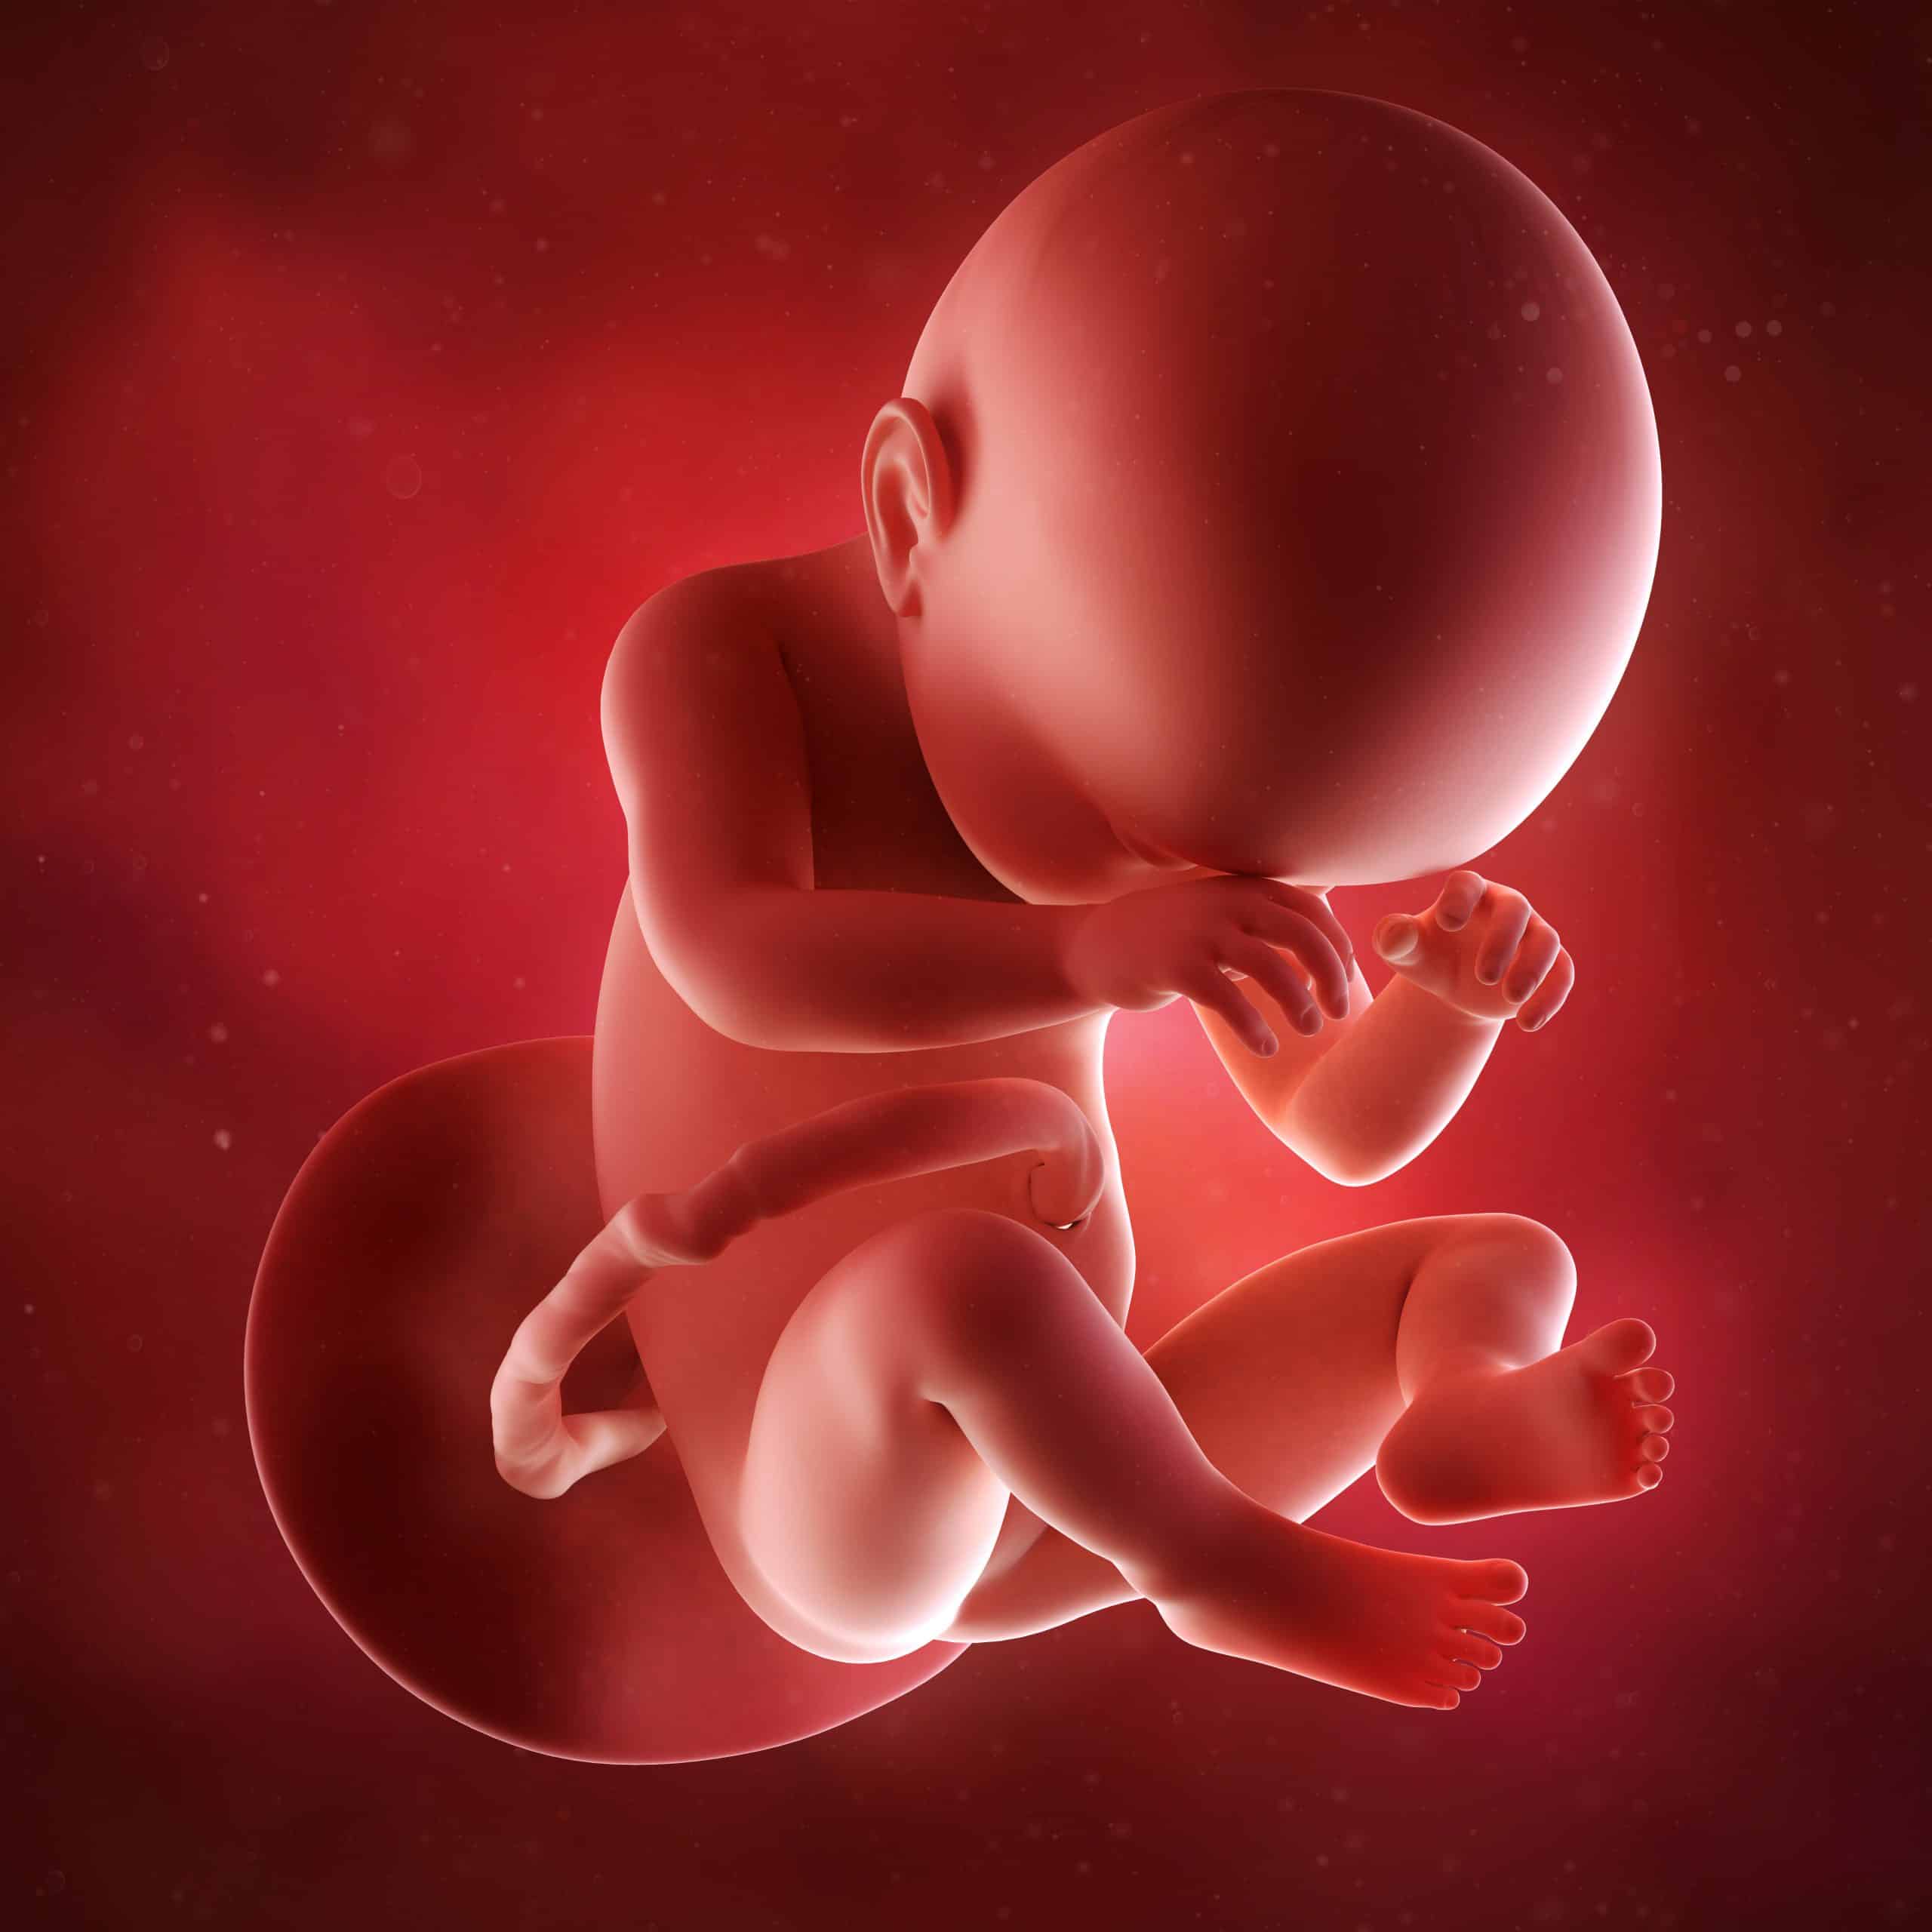 38-week-foetus